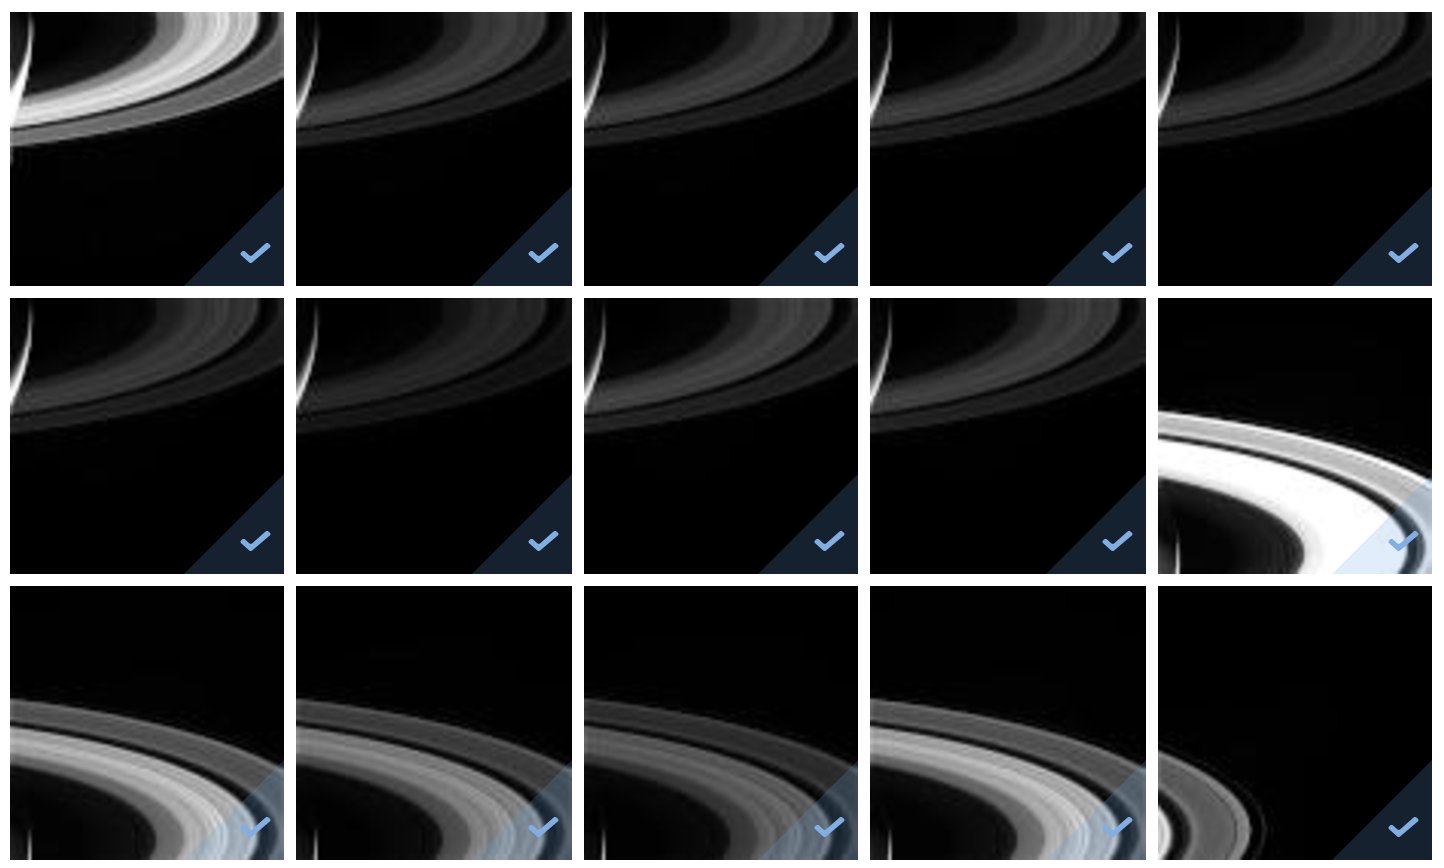 Кассини передал последний сигнал и фото Сатурна перед гибелью 